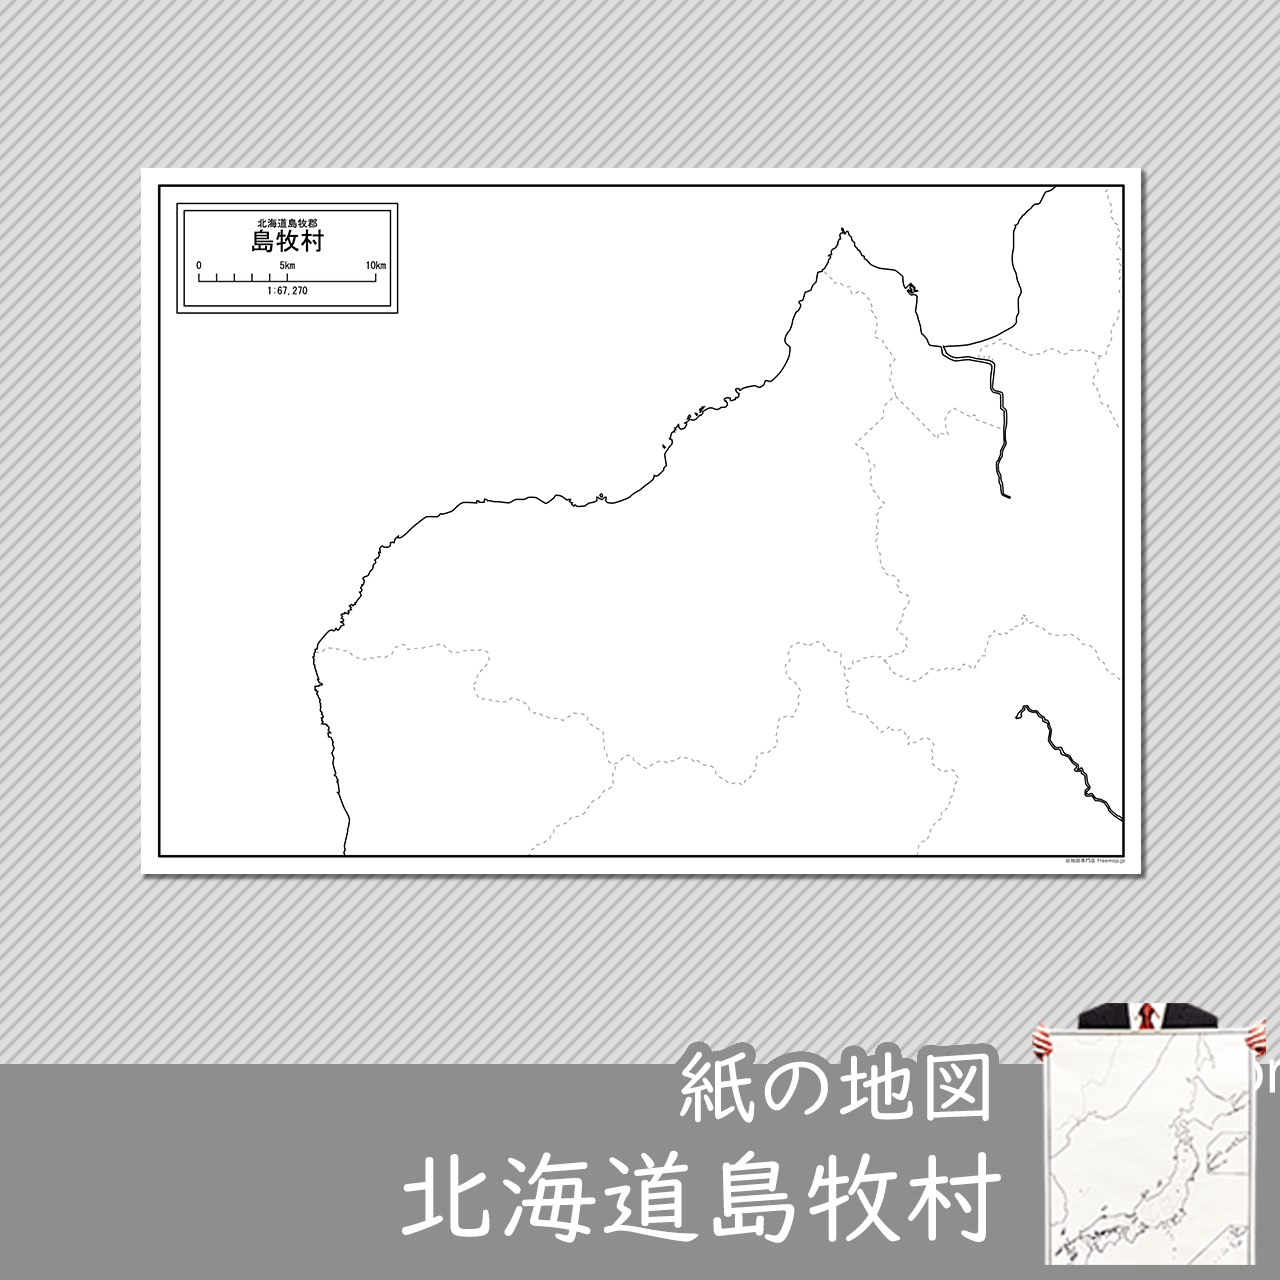 島牧村の紙の白地図のサムネイル